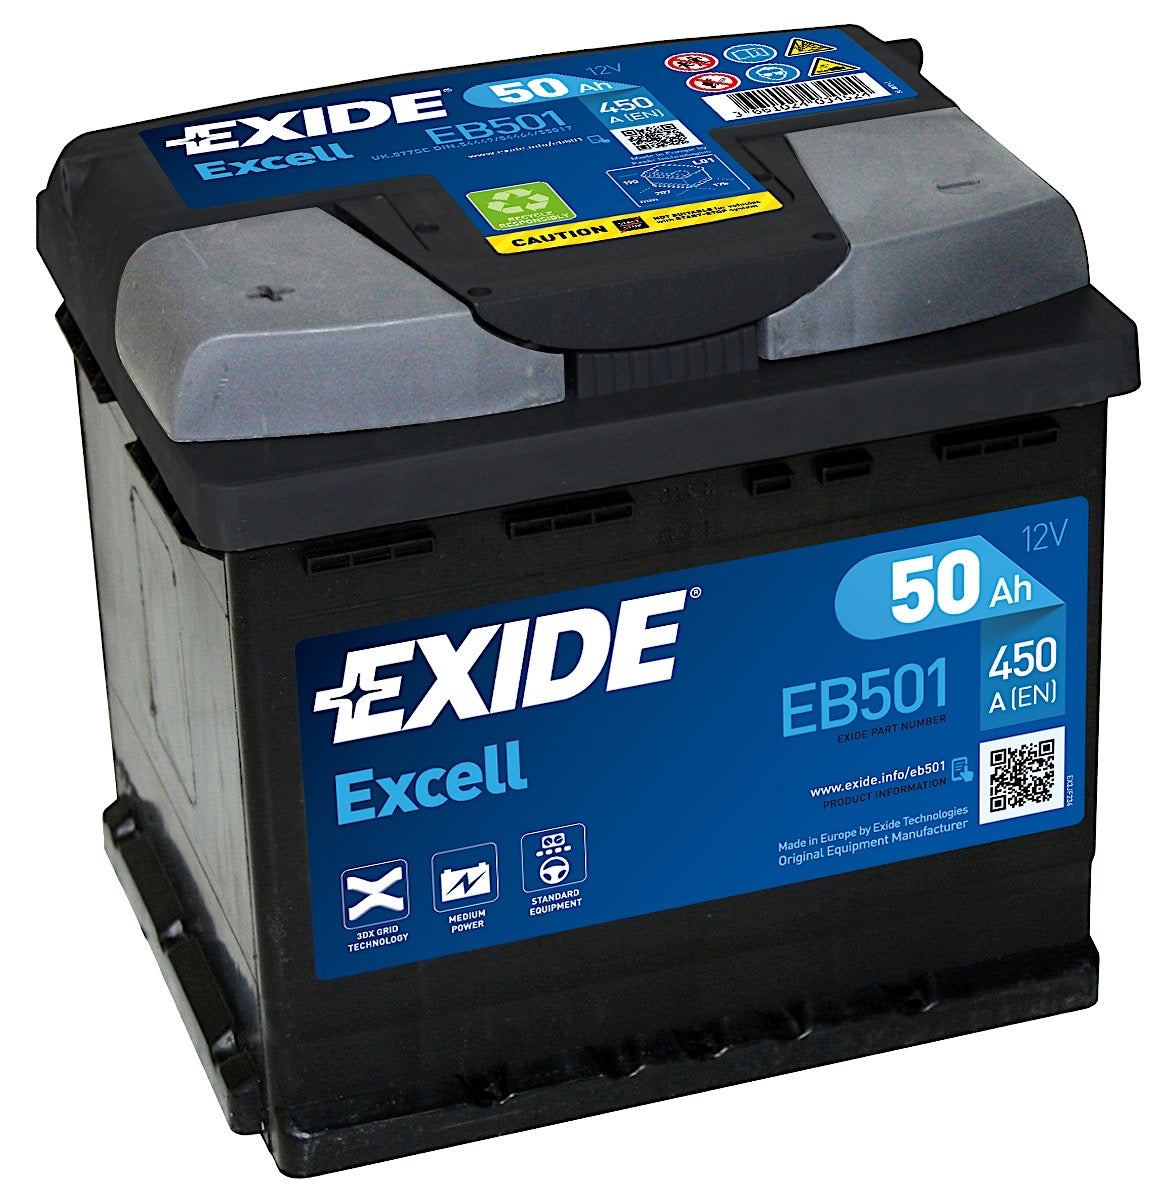 Exide Excell EB501 12V 50Ah 450A/EN